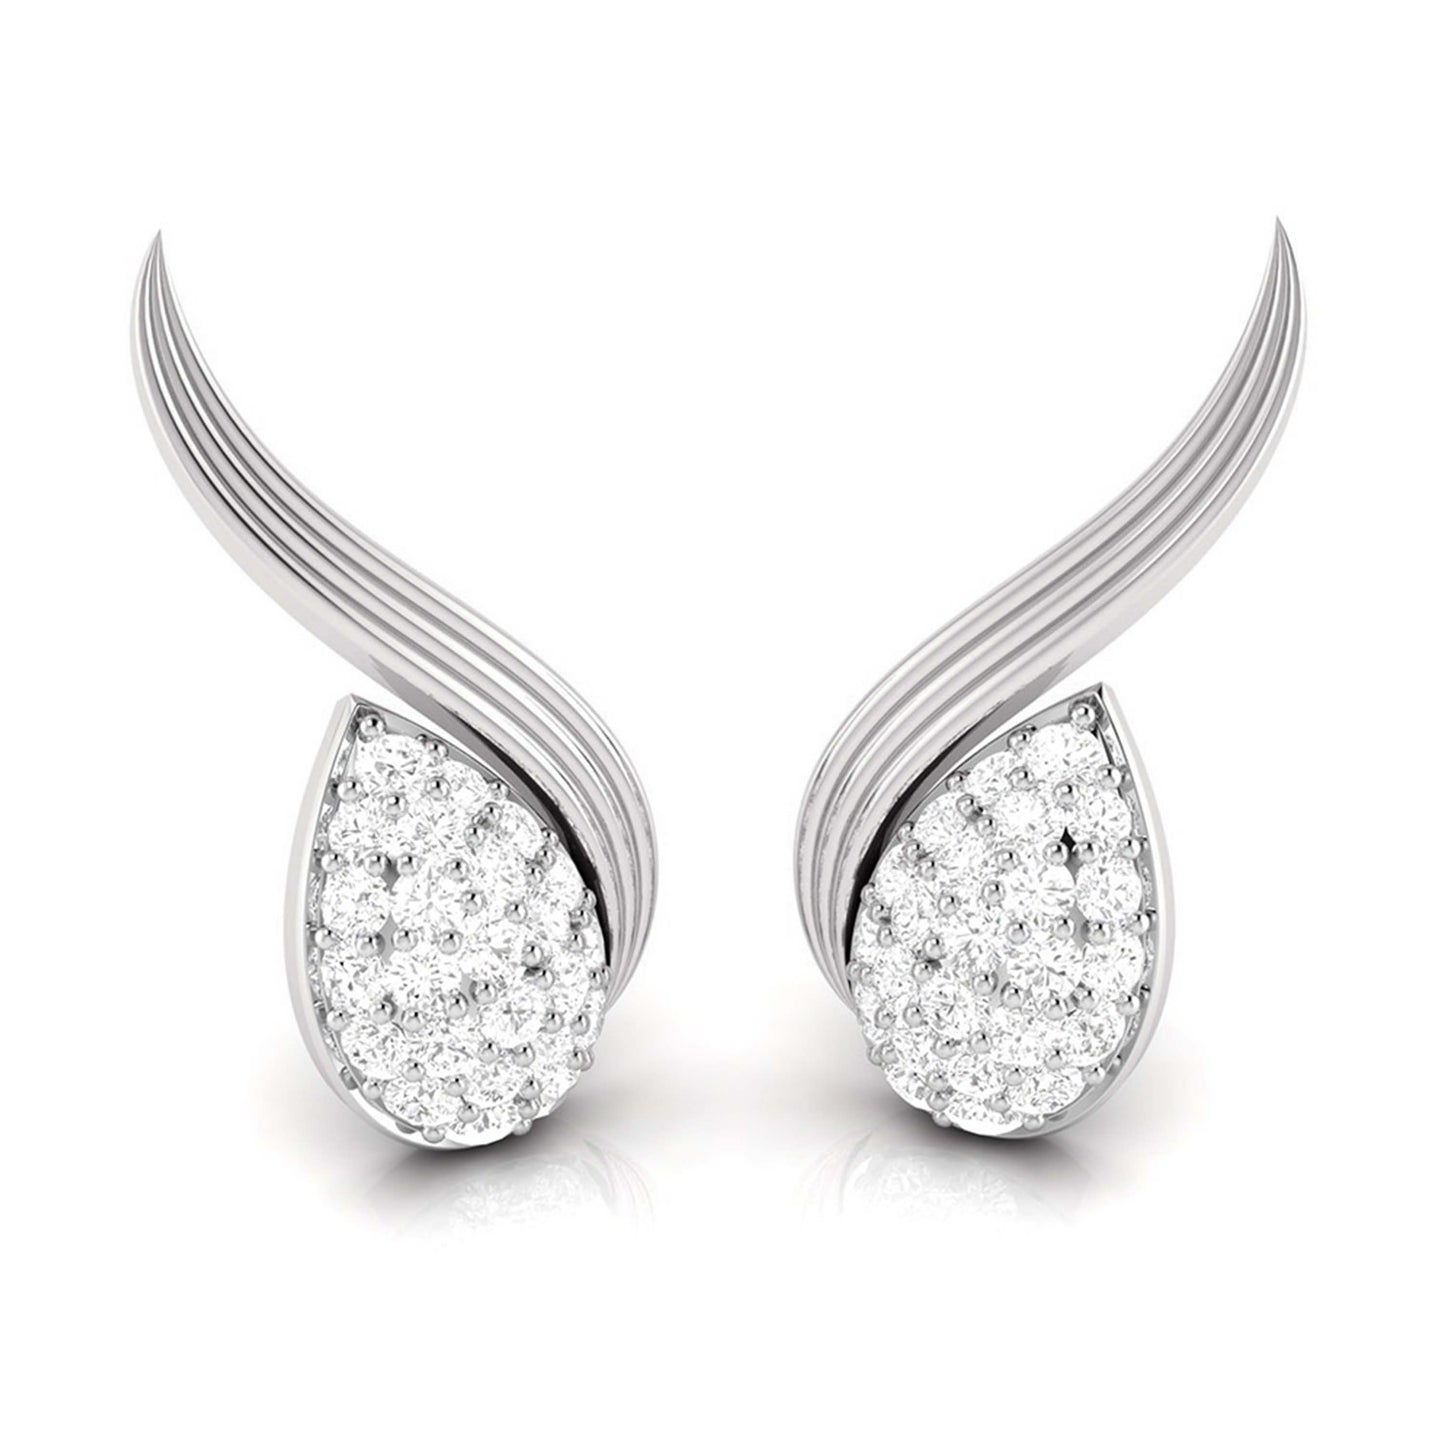 Fancy earrings design Orlando Lab Grown Diamond Earrings Fiona Diamonds